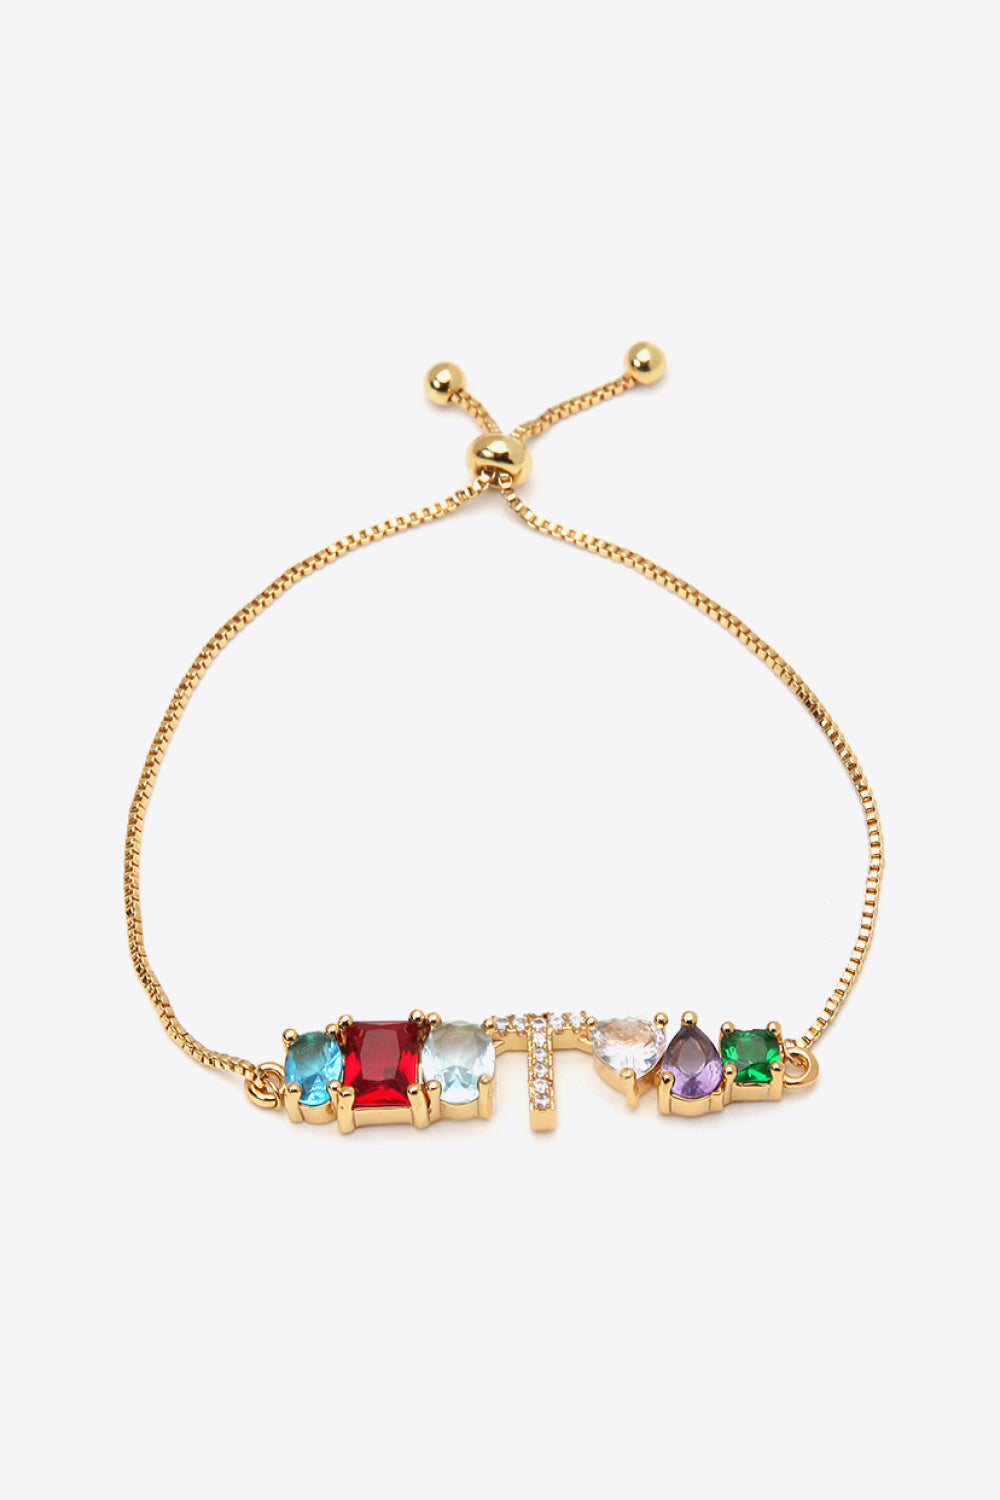 K to T Zircon Bracelet - T / One Size - Women’s Jewelry - Bracelets - 28 - 2024